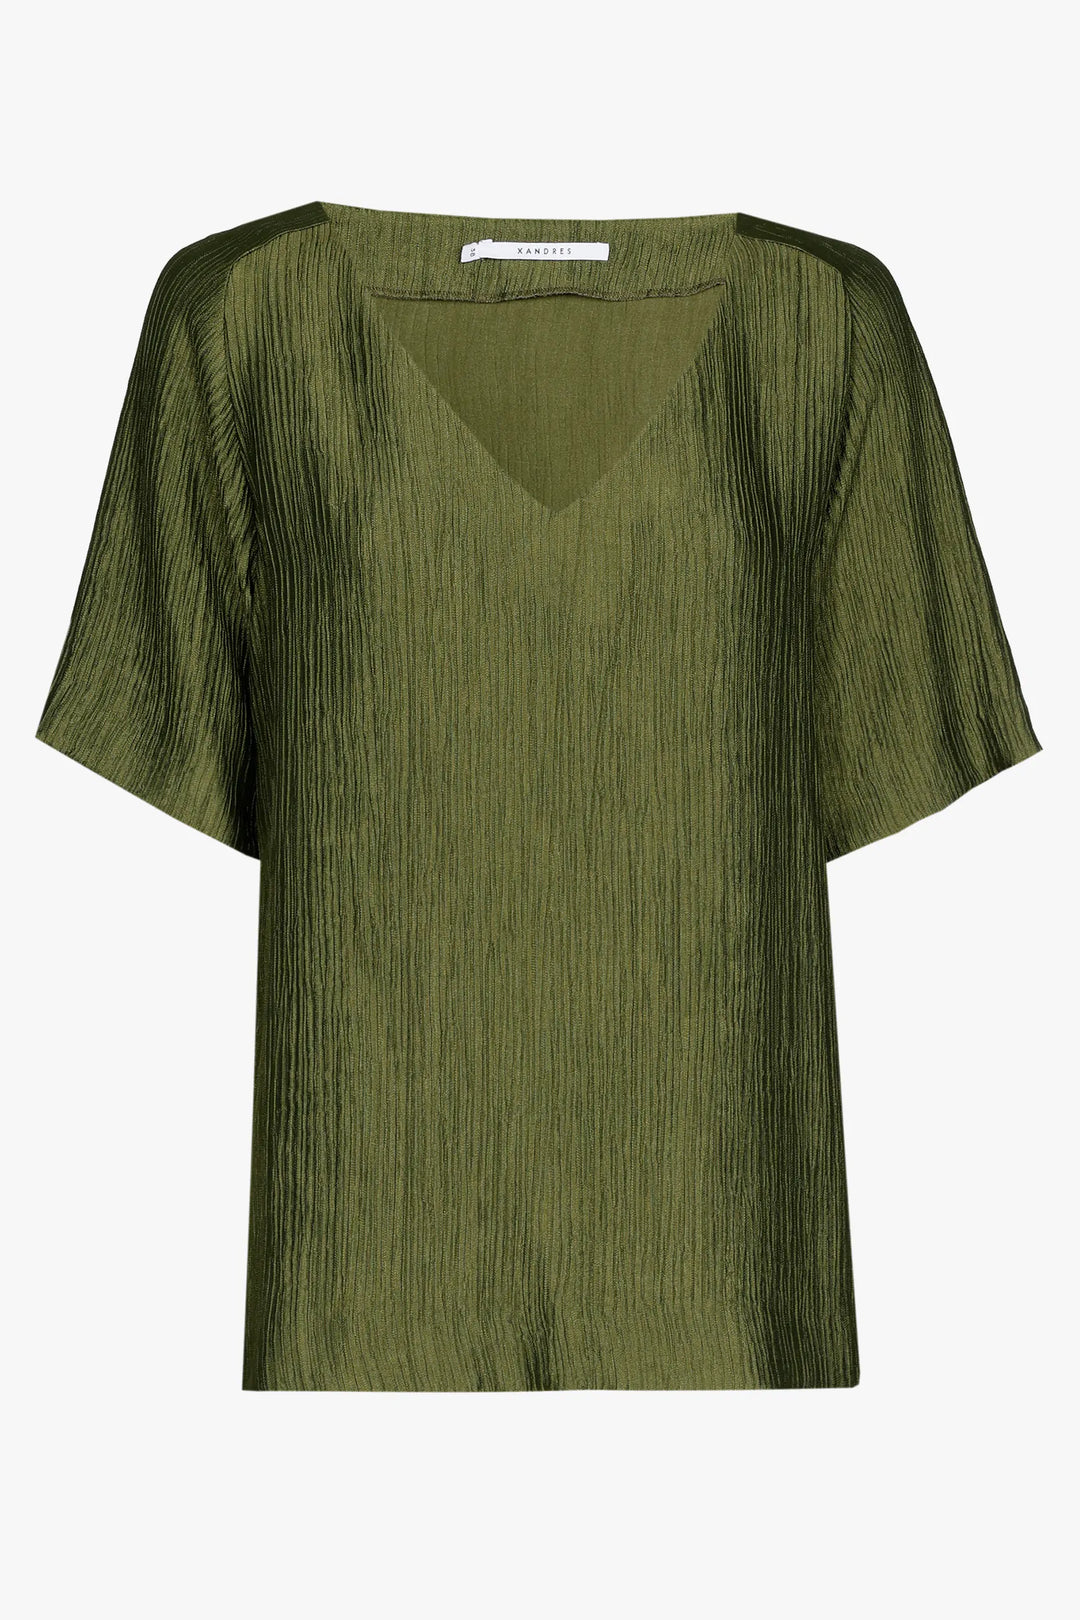 kaki blouse met satijnlook - xandres - - grote maten - dameskleding - kledingwinkel - herent - leuven